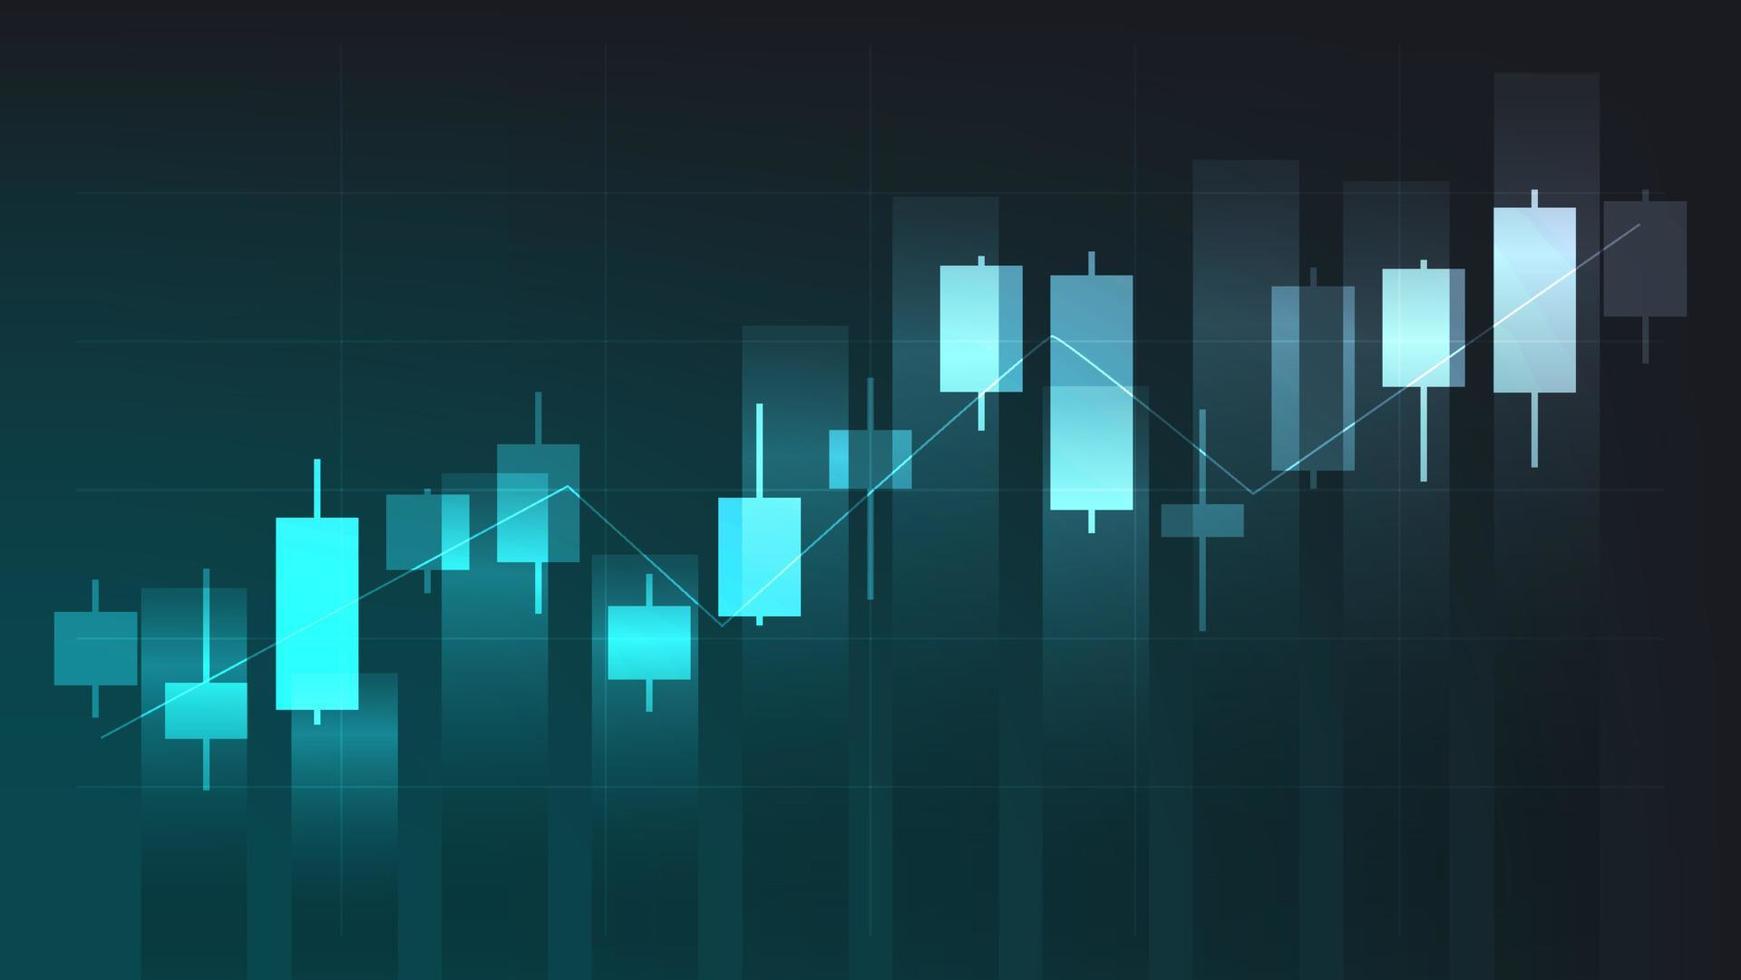 finansiell företag statistik med bar Graf och ljusstake Diagram visa stock marknadsföra pris på mörk grön bakgrund vektor